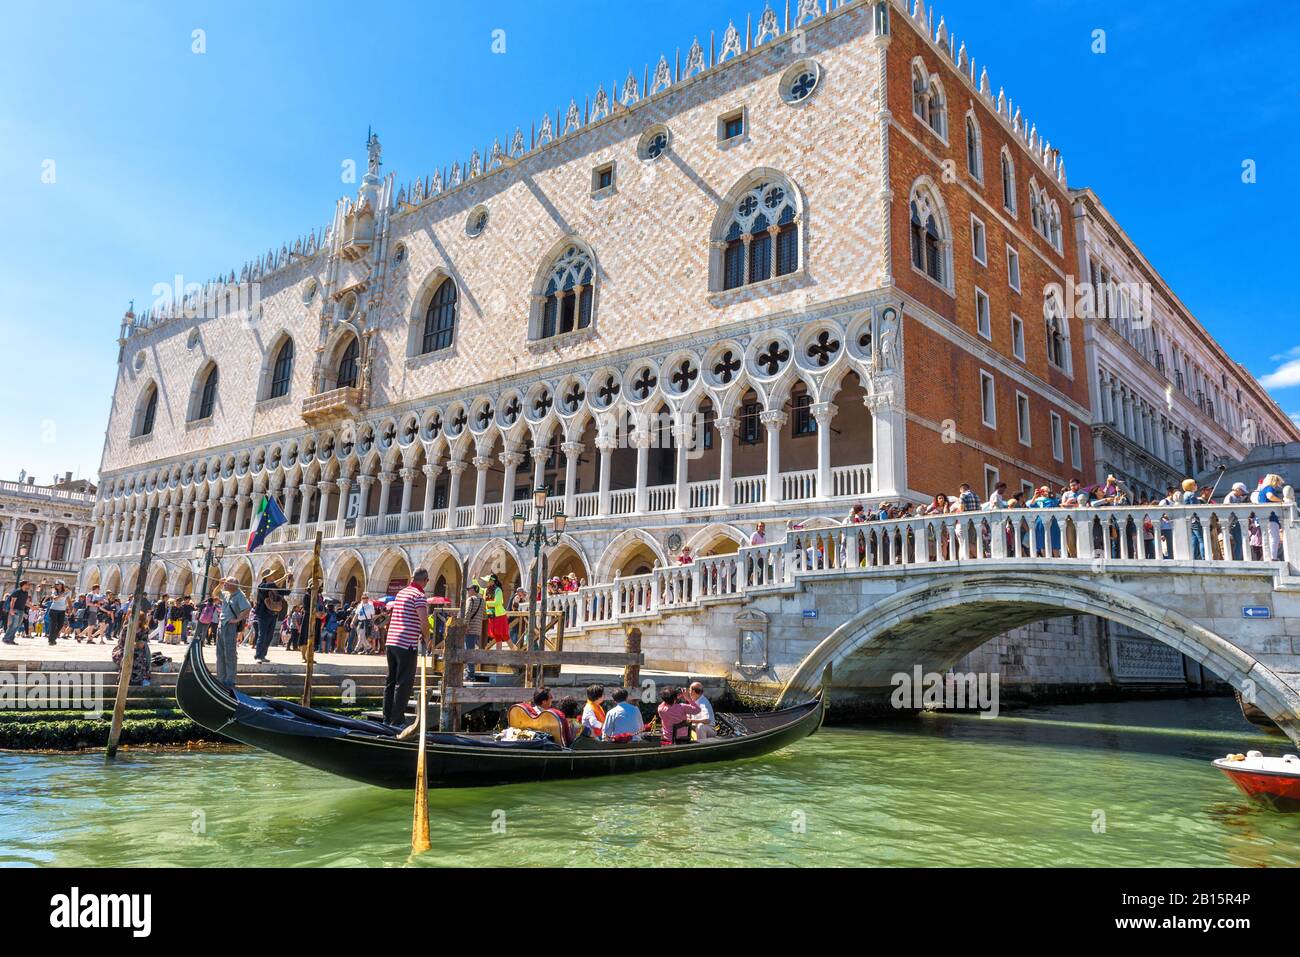 Venise, Italie - 21 mai 2017 : Palais des Doges par San Marco à Venise. C'est l'une des principales attractions touristiques de Venise. Belle vue sur la Venise e Banque D'Images